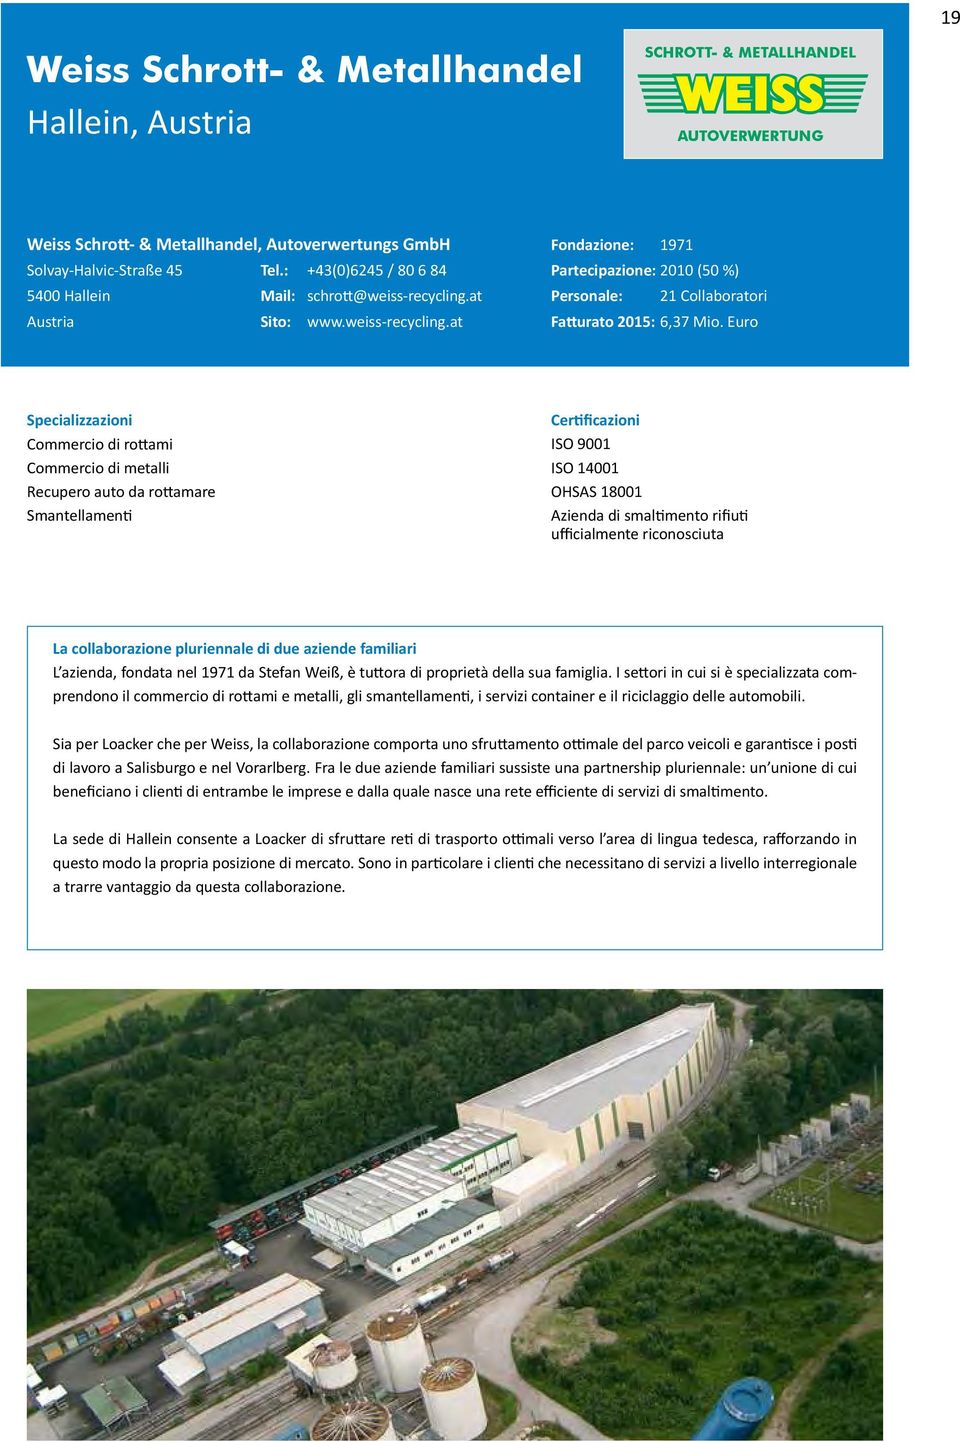 Euro Commercio di rottami Commercio di metalli Recupero auto da rottamare Smantellamenti Certificazioni ISO 9001 ISO 14001 OHSAS 18001 Azienda di smaltimento rifiuti ufficialmente riconosciuta La